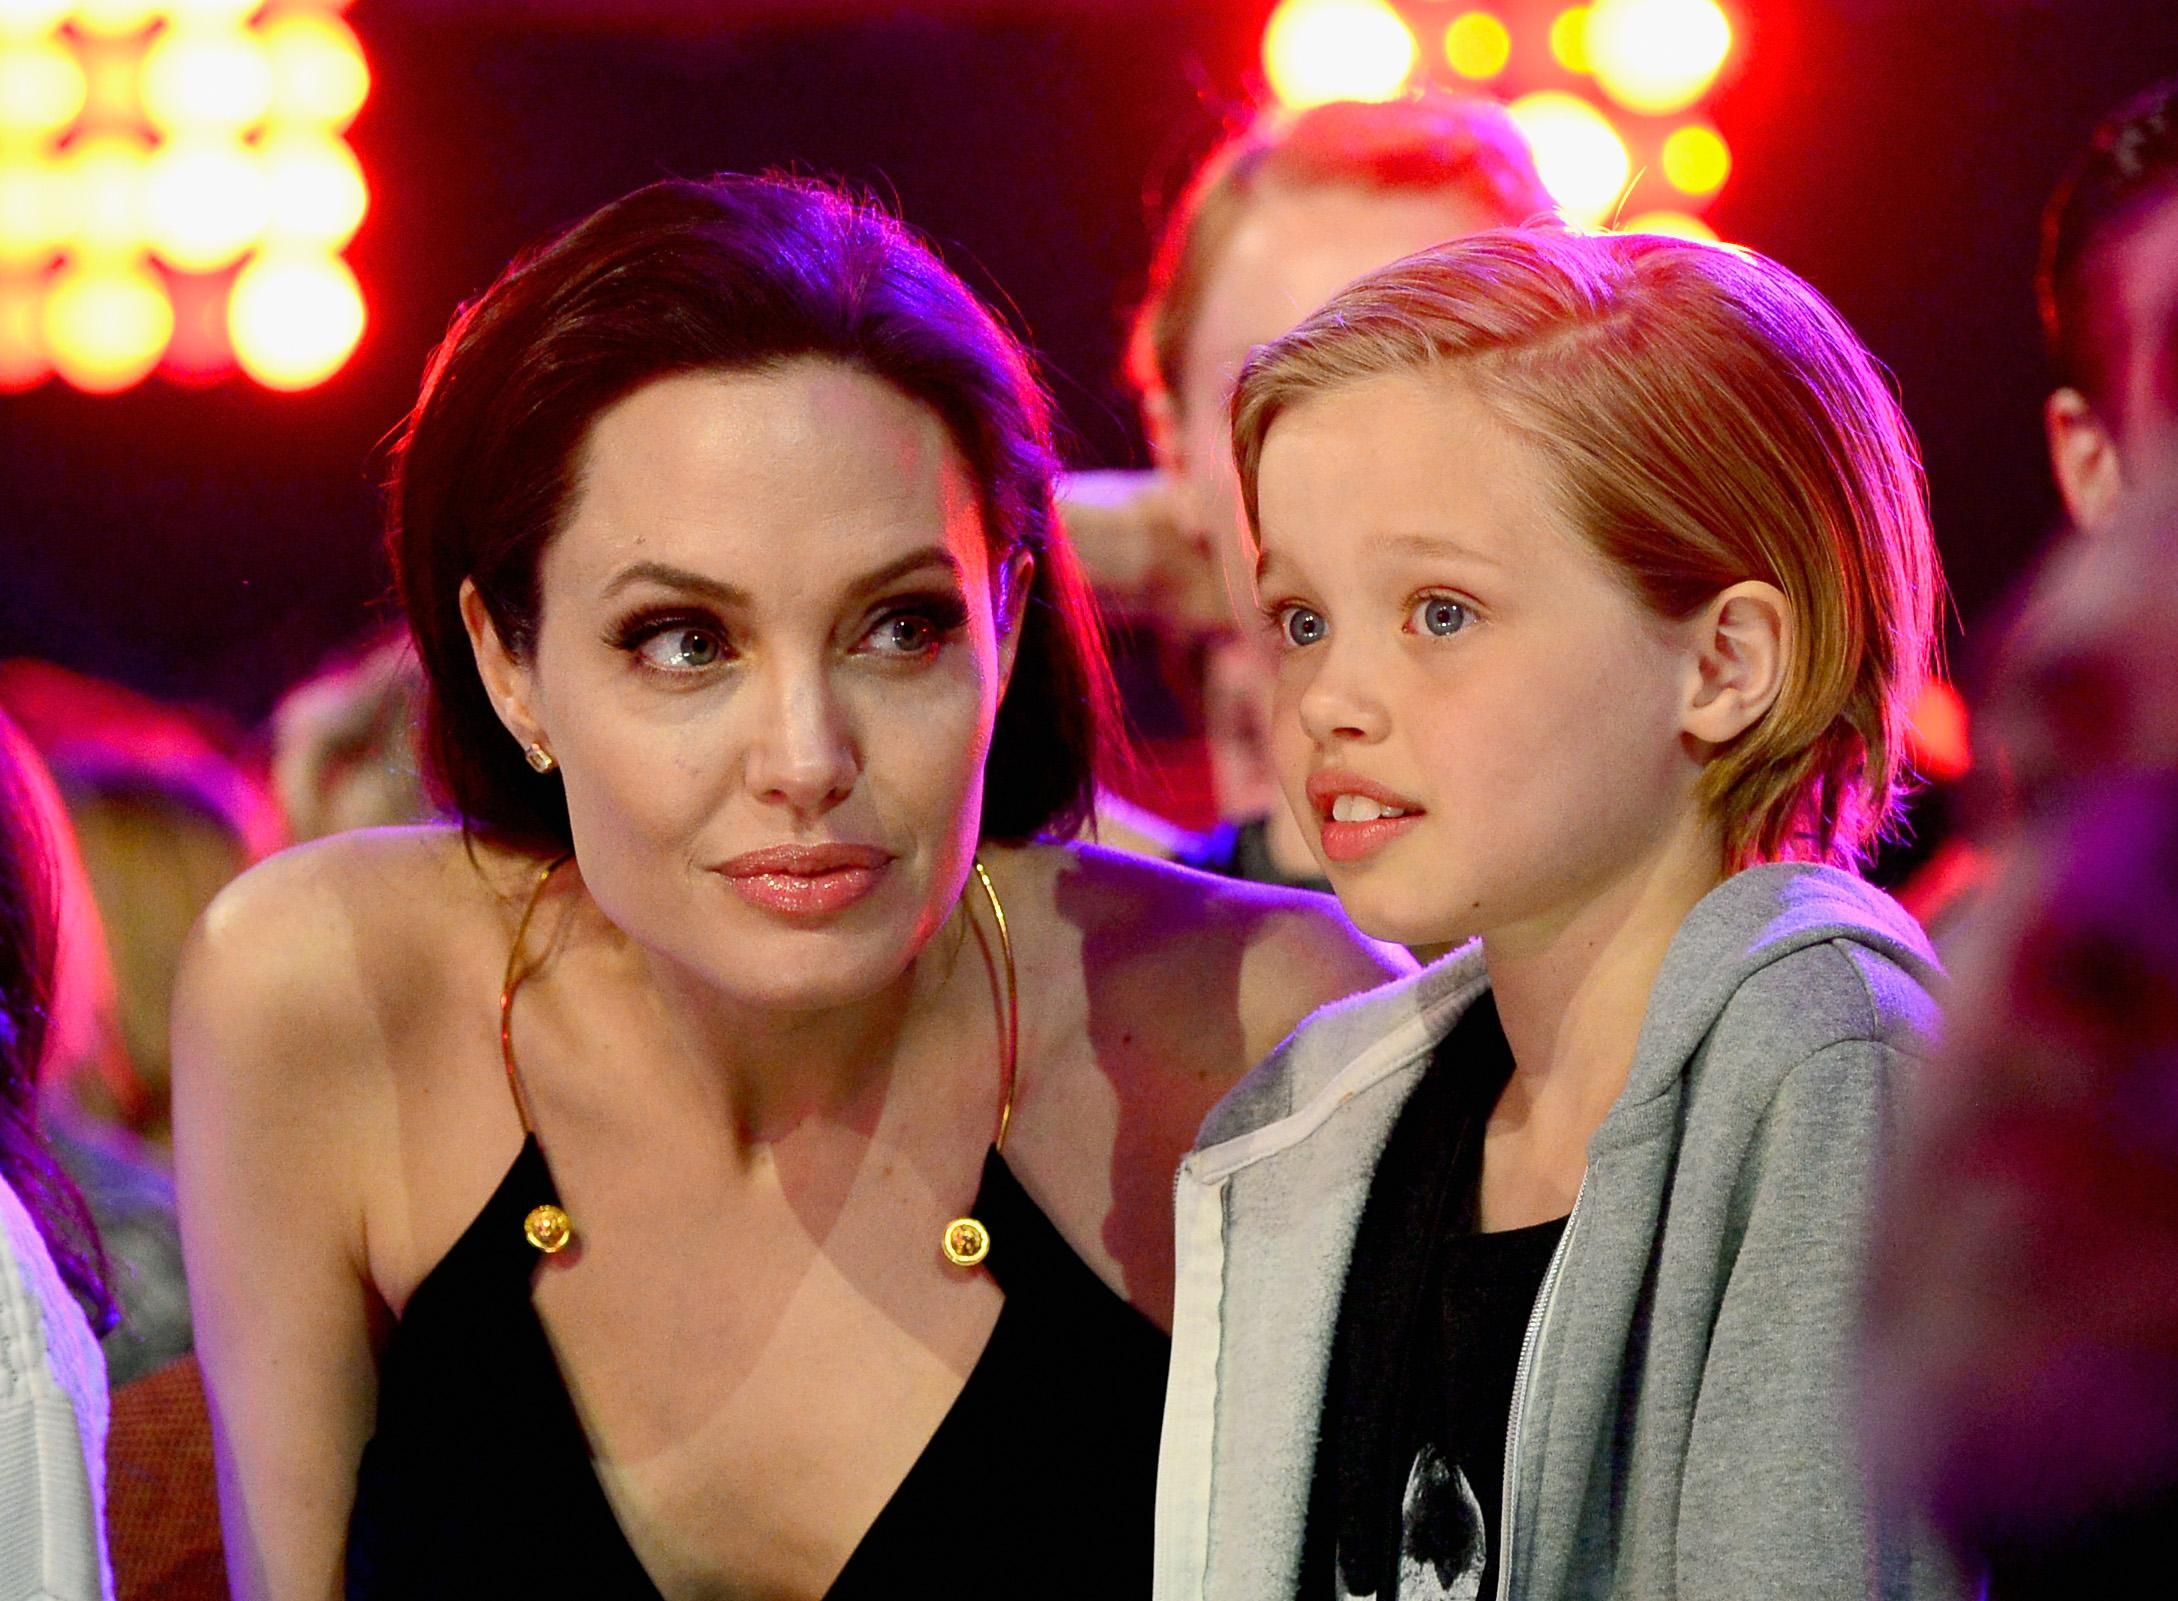 Анджелина Джоли организовала день рождения дочери в квест-комнате по мотиву фильма ужасов